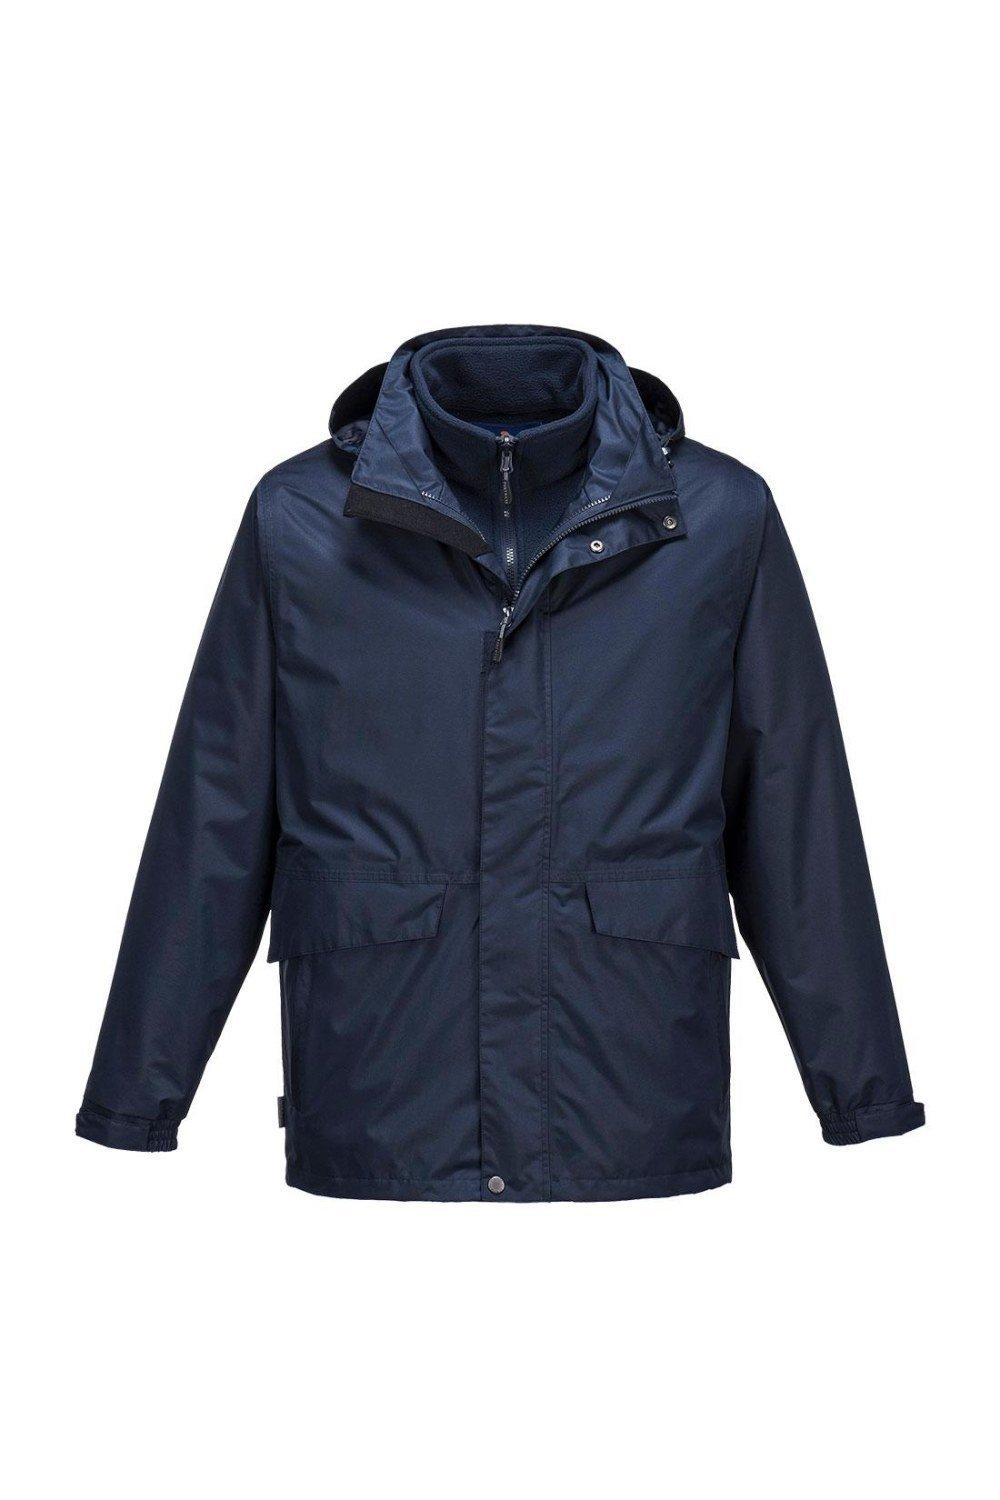 Дышащая куртка Argo 3 в 1 Portwest, темно-синий